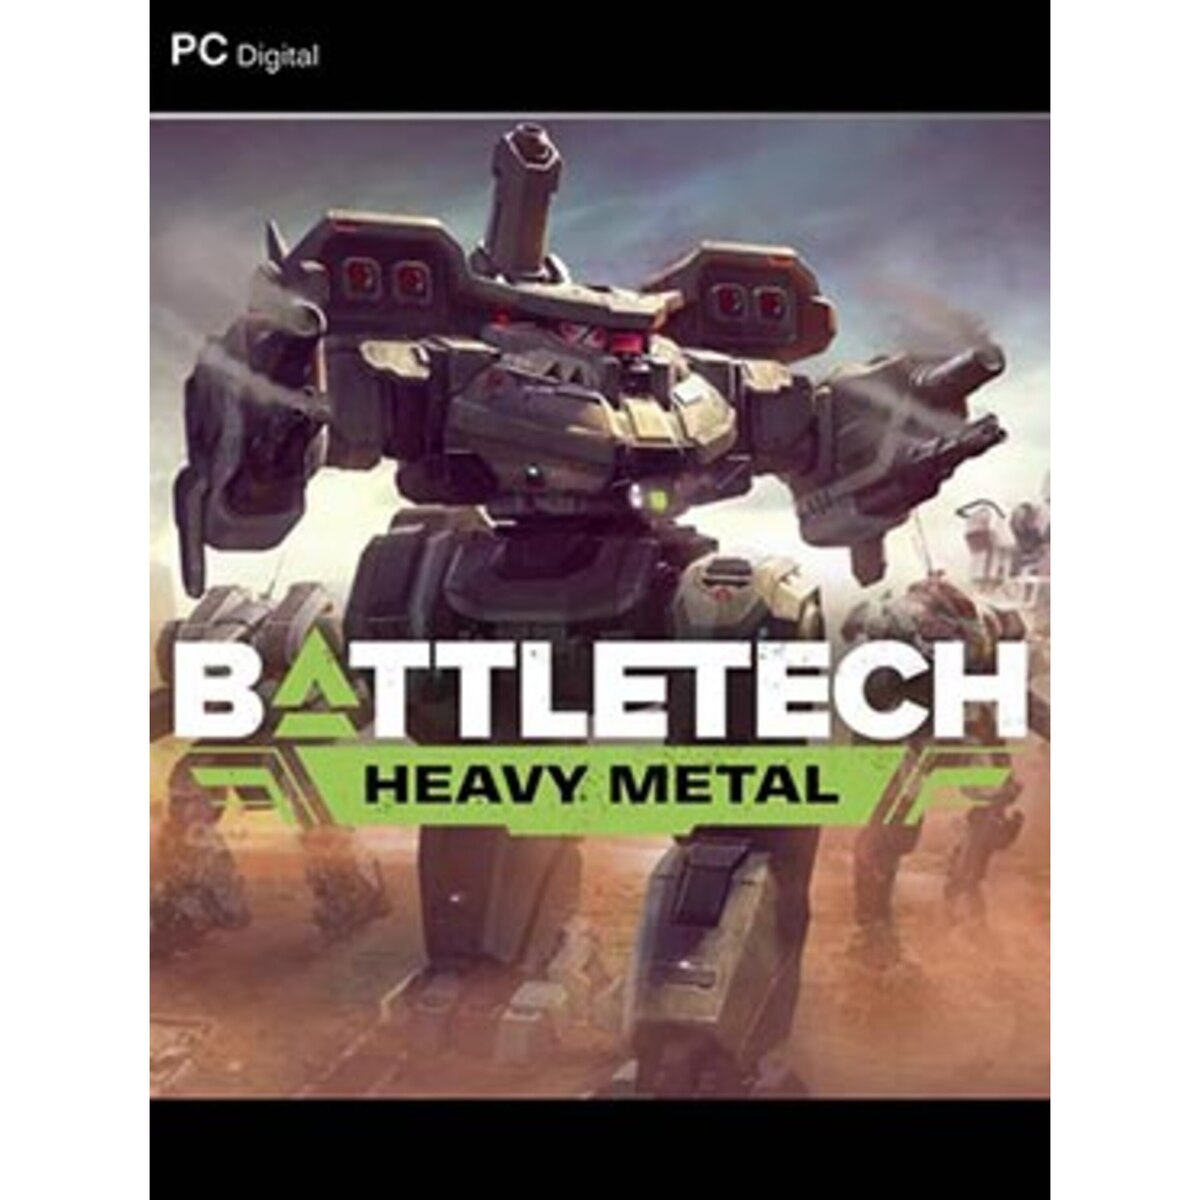 battletech heavy metal size